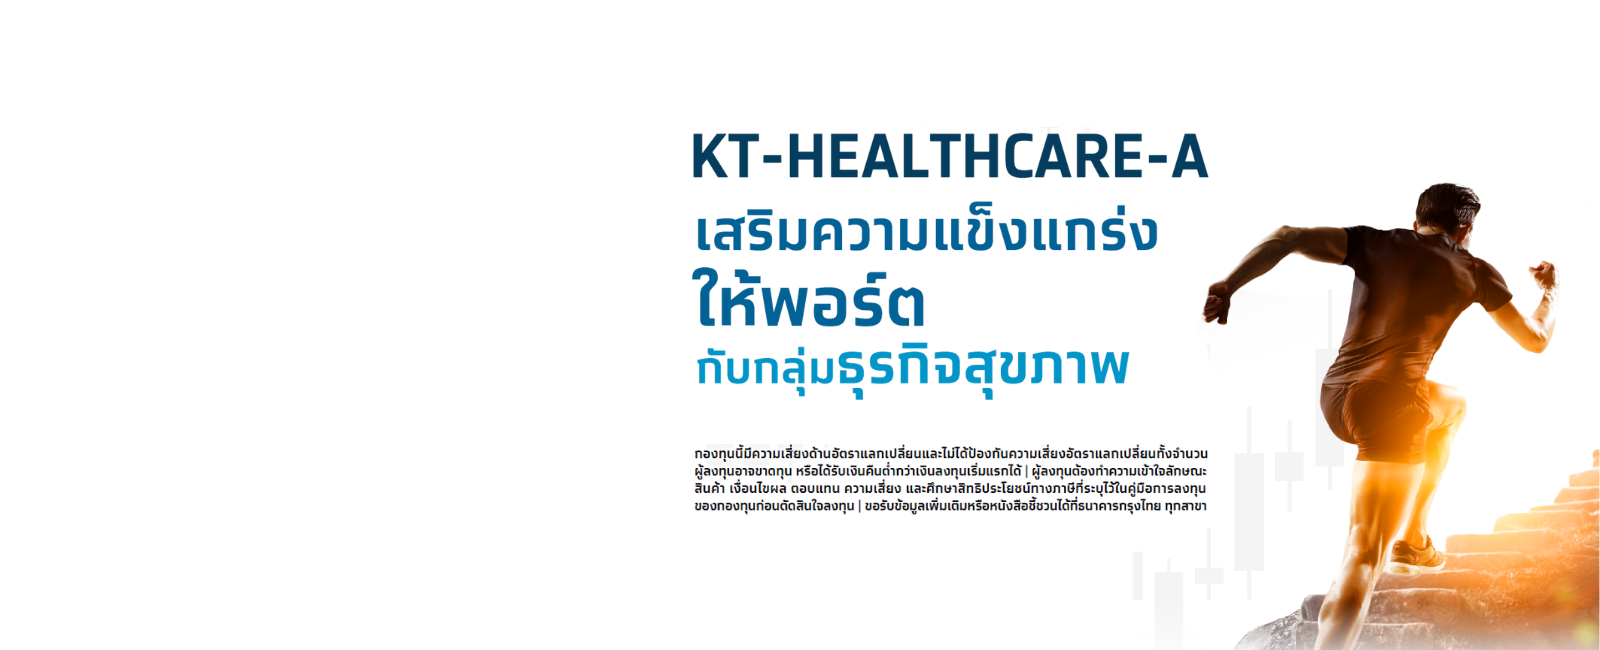 ซื้อกองทุนรวมเทคโนโลยีดูแลสุขภาพ  KT-HEALTHCARE-A desktop banner 